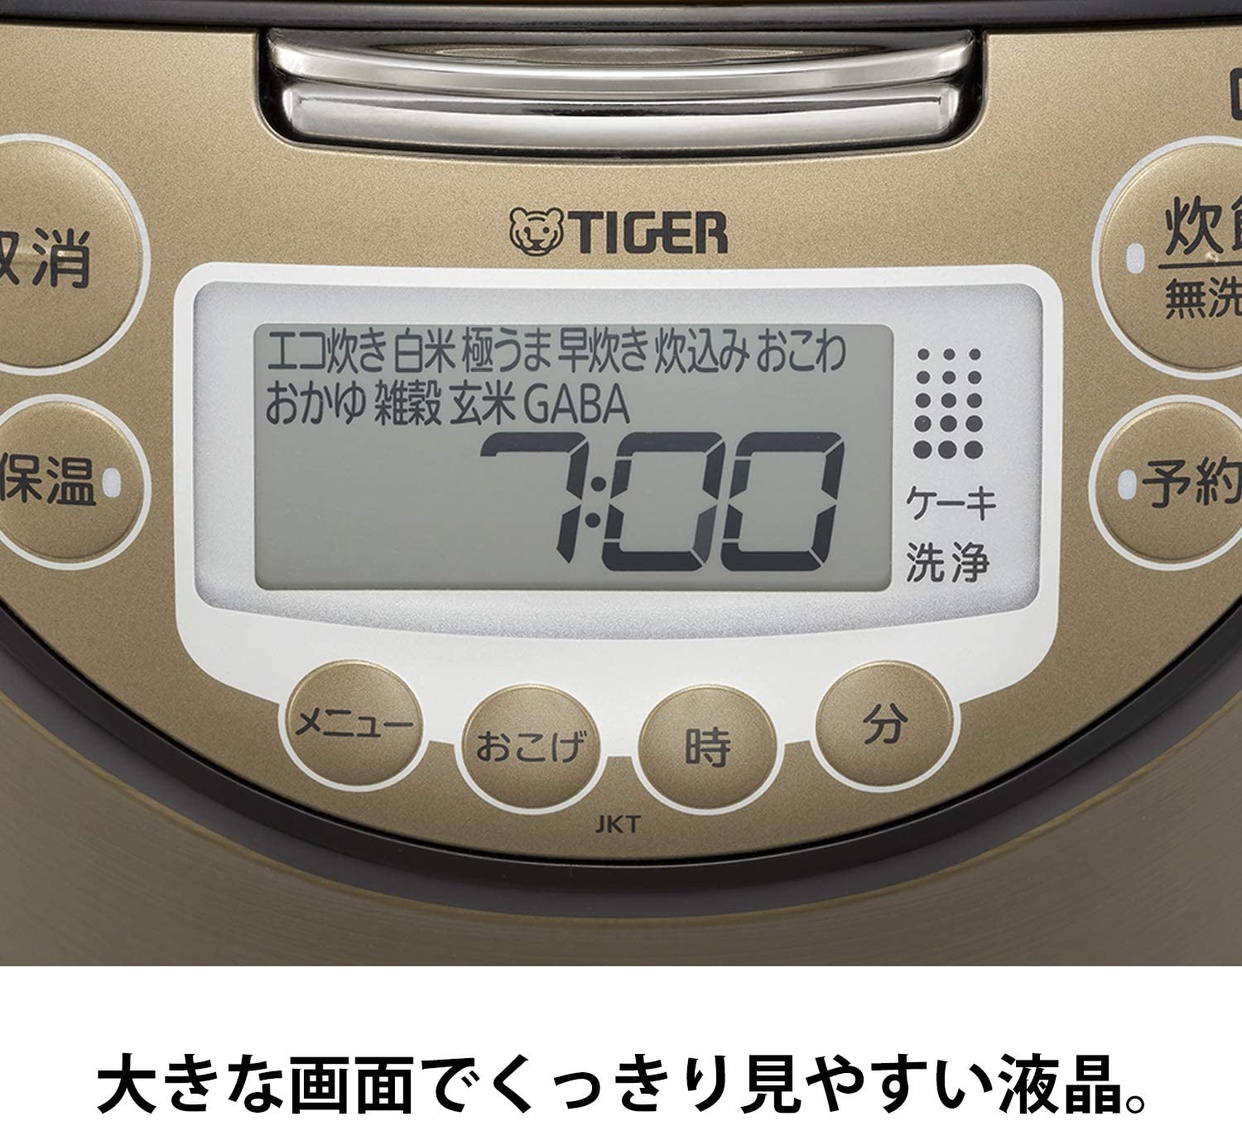 タイガー魔法瓶(TIGER) IHジャー炊飯器 JKT-P100の商品画像7 